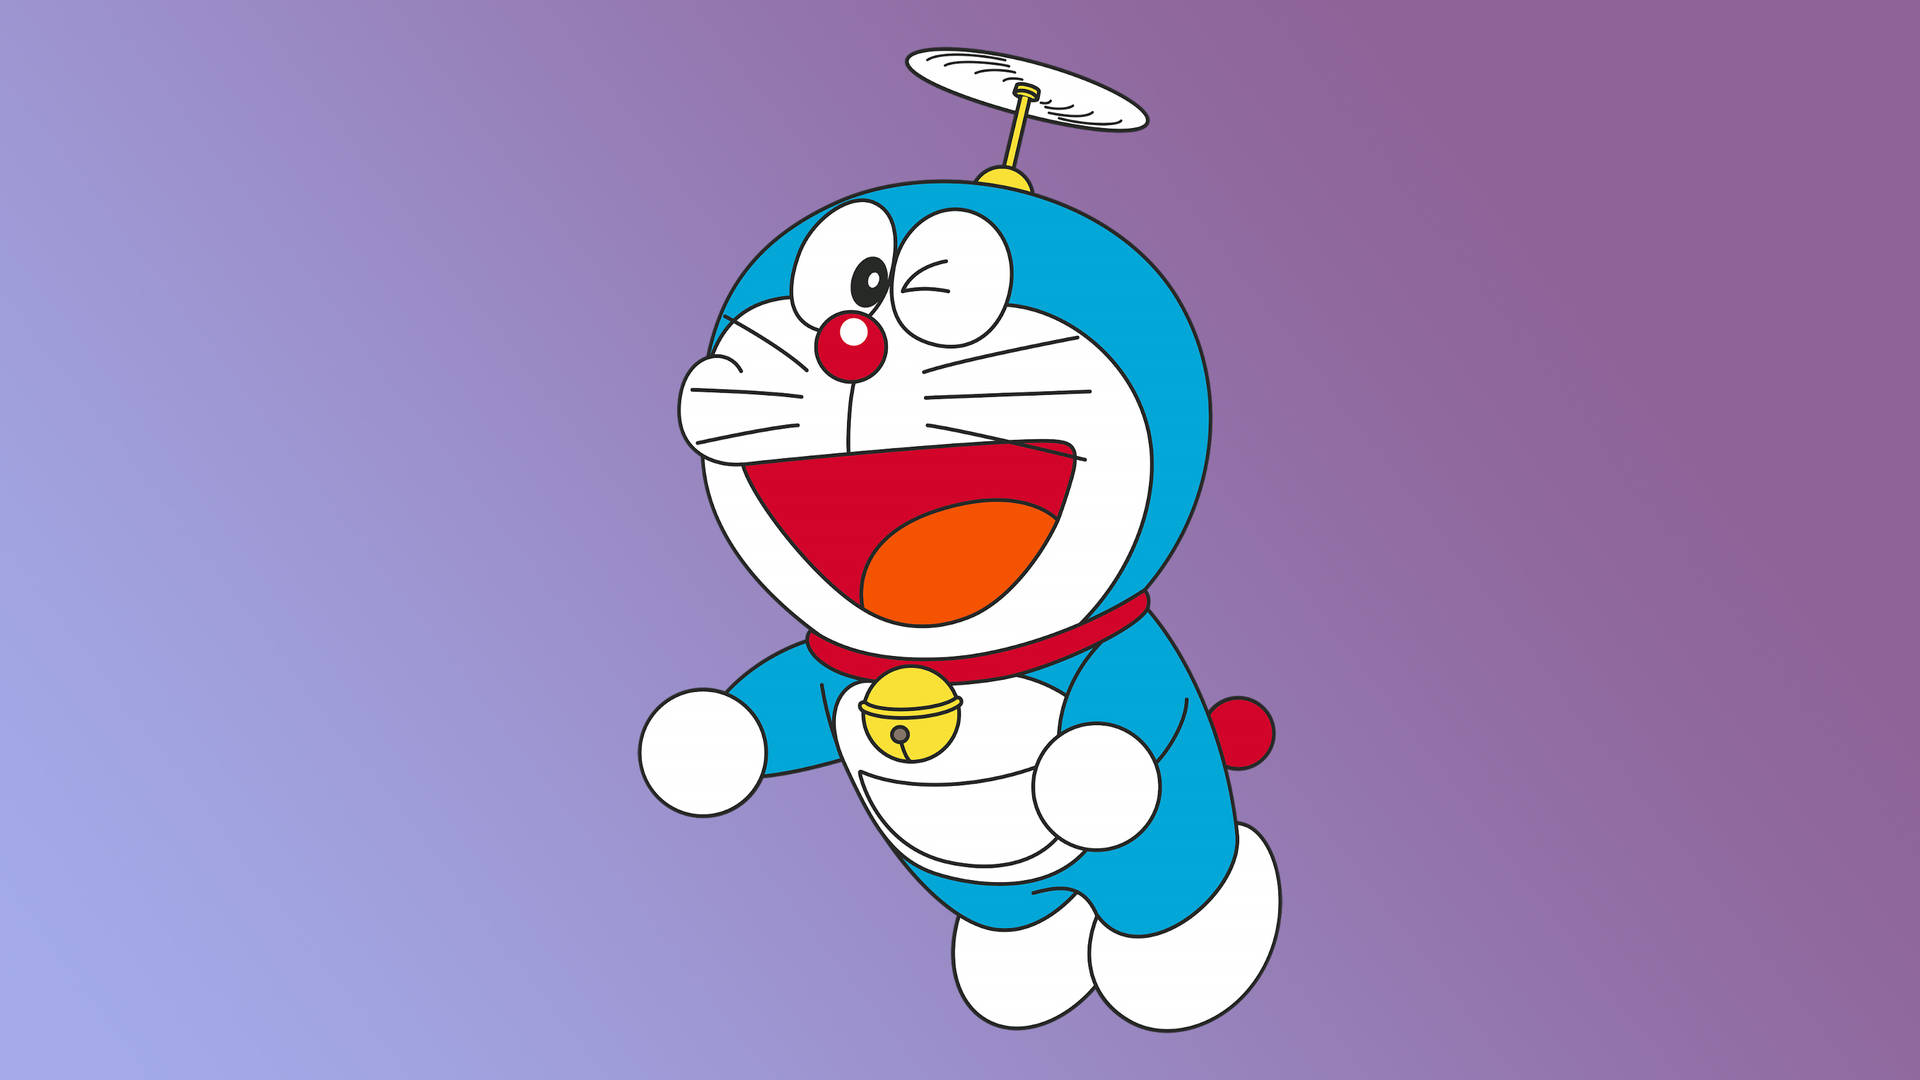 Free, Doraemon 4k Wallpaper, Downloads: Hãy trang trí màn hình điện thoại của bạn với những bức ảnh Doraemon chất lượng cao 4K miễn phí tại trang web của chúng tôi. Sử dụng công nghệ tiên tiến nhất, những bức ảnh này sẽ giúp bạn đắm mình trong thế giới của Doraemon như thật.